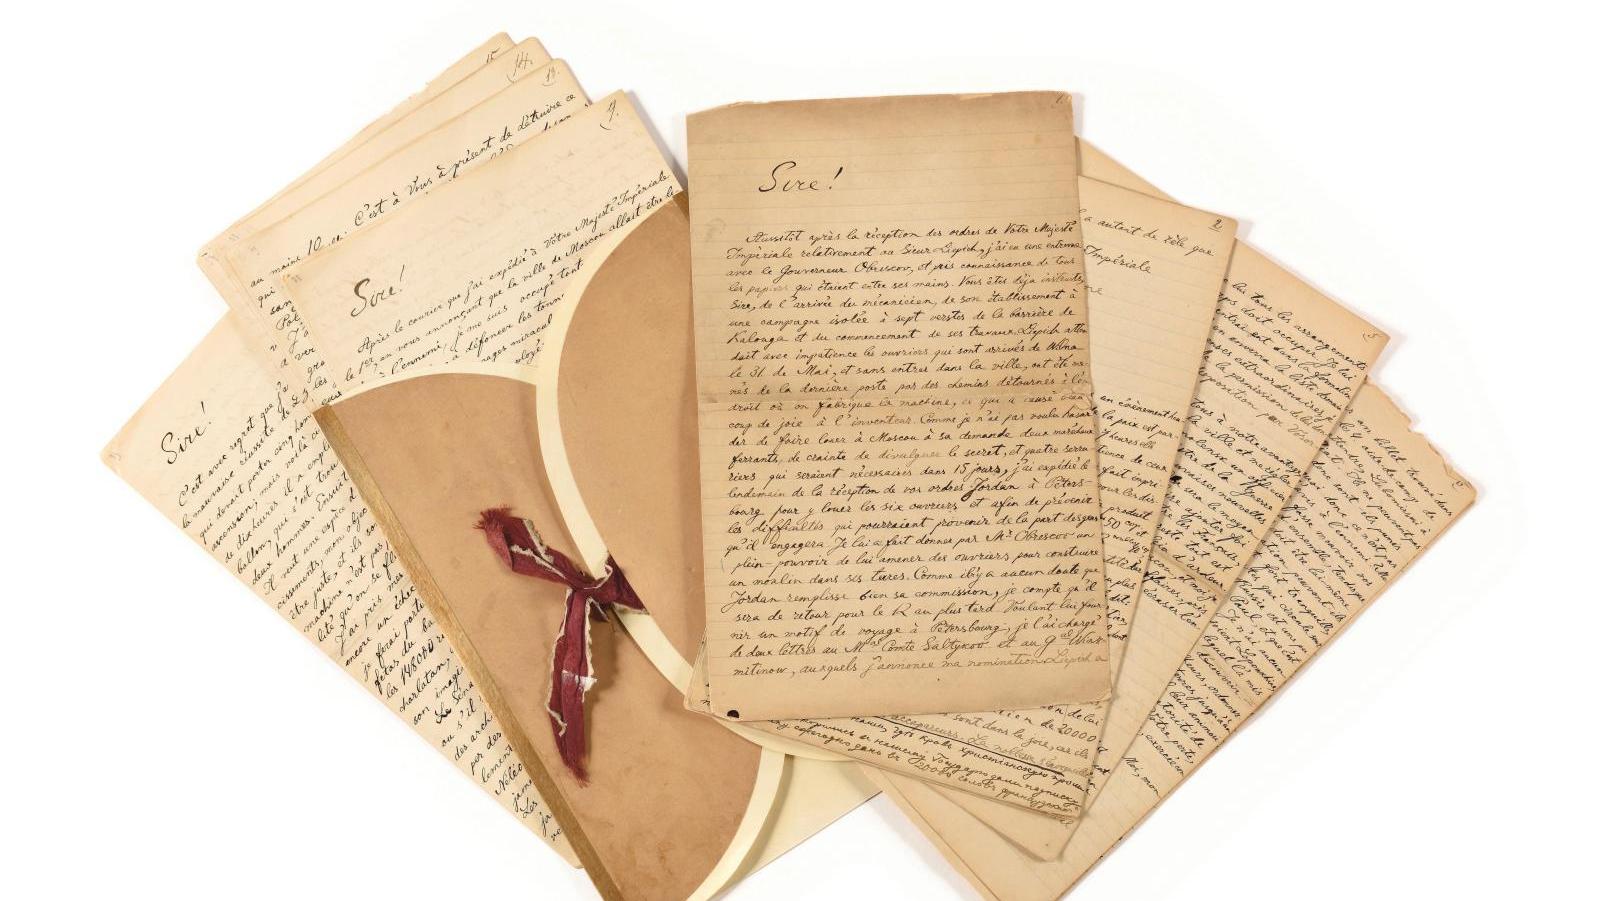 Copie manuscrite de 27 lettres adressées au tsar entre le 27 mai et le 2 décembre 1812,... Sur les terres de Russie